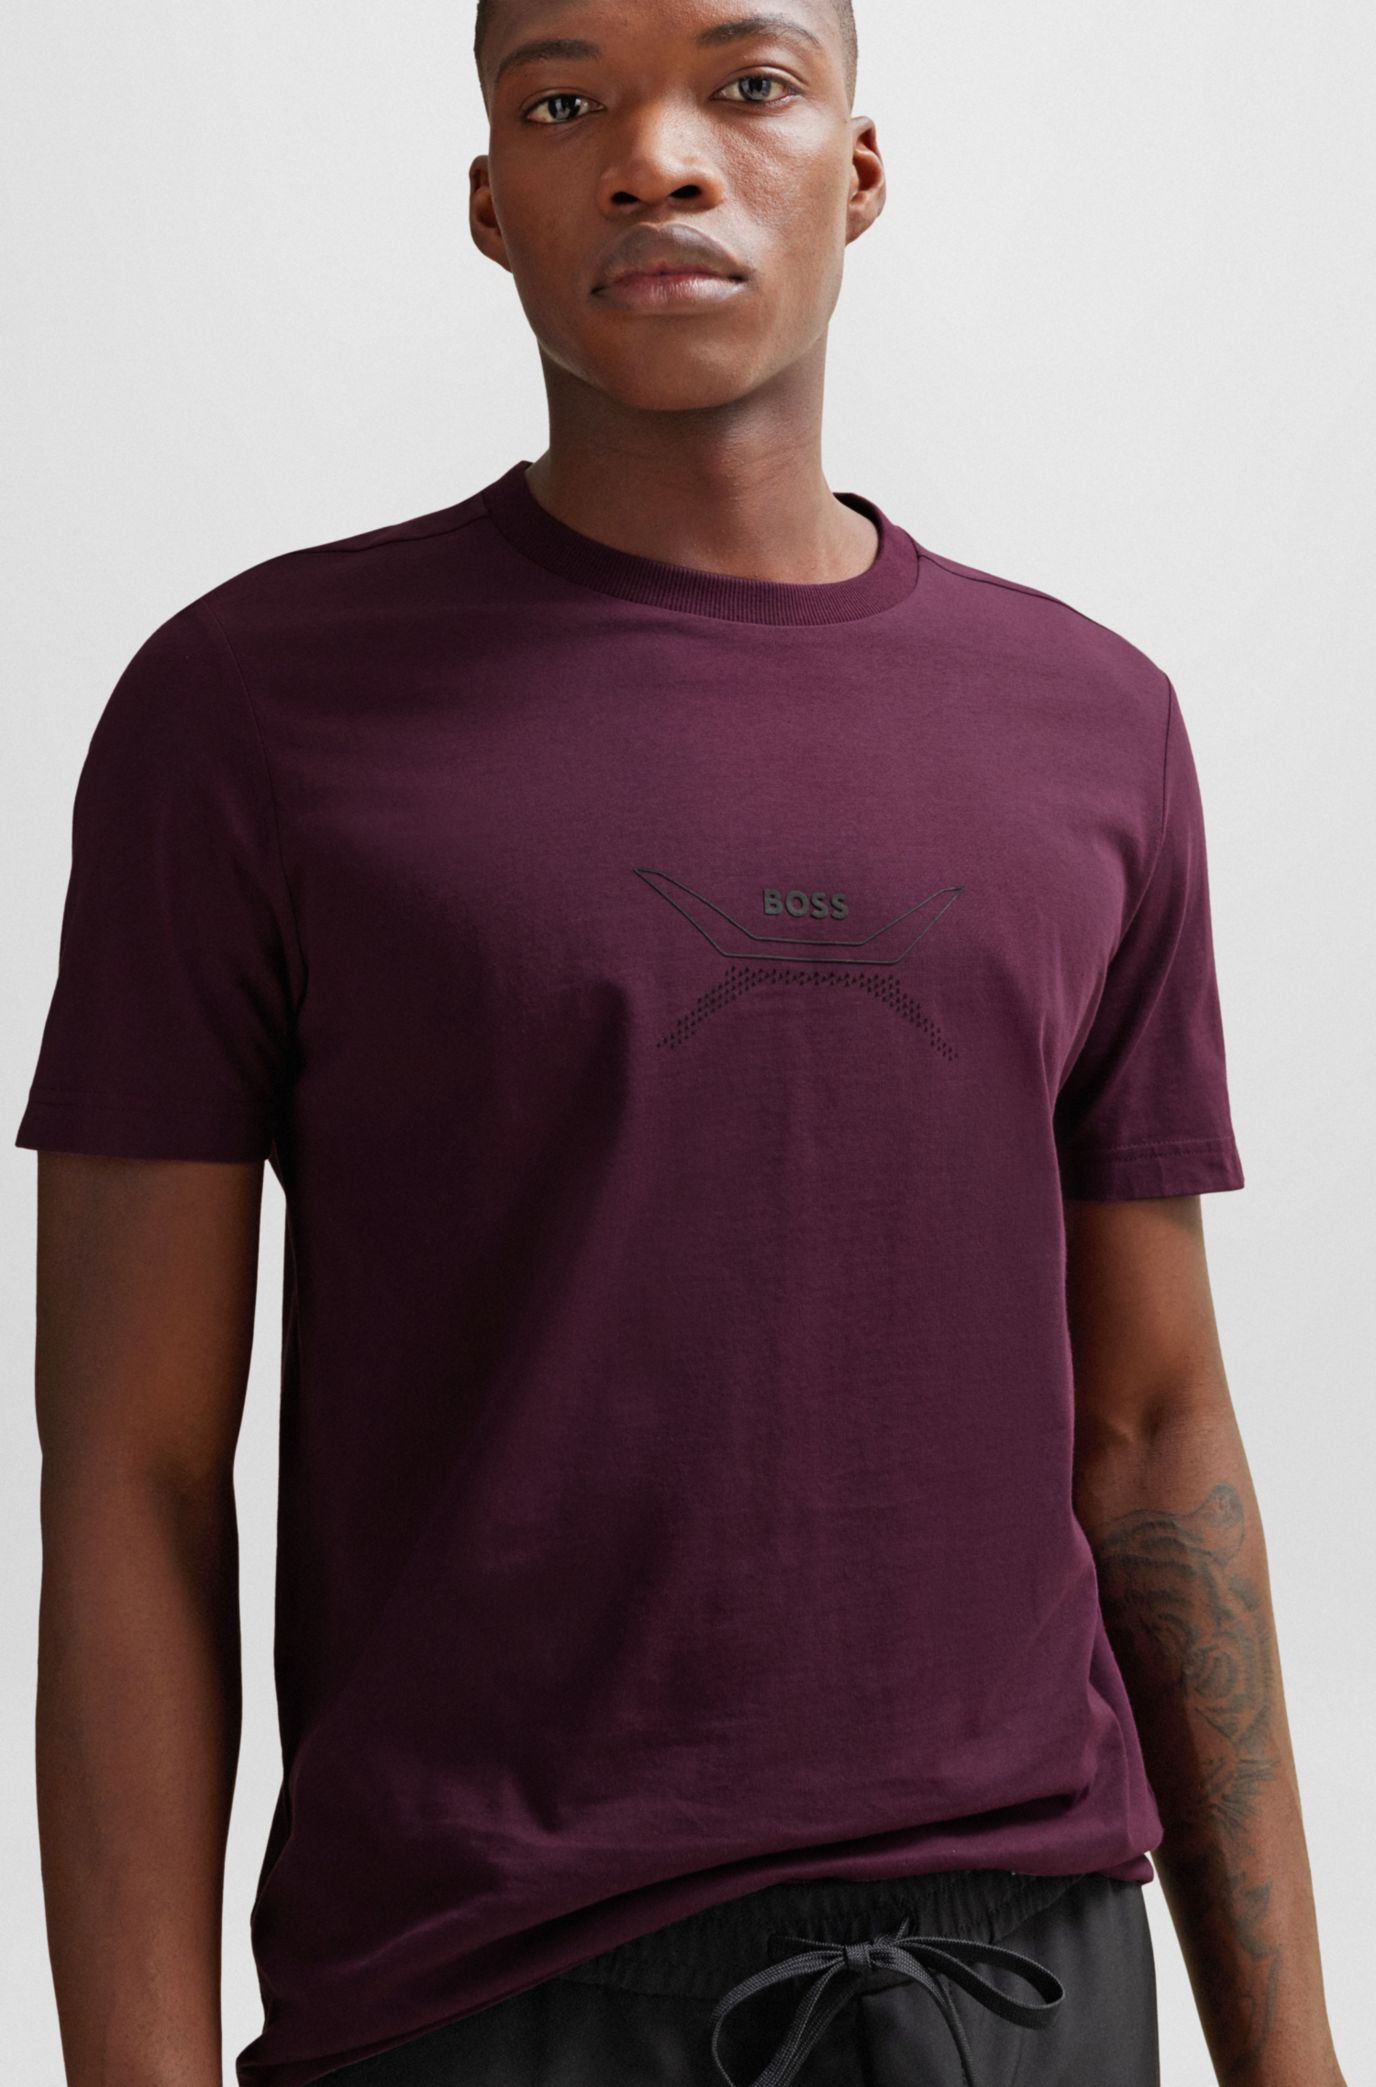 Prada camiseta con logo bordado y cuello redondo 2022